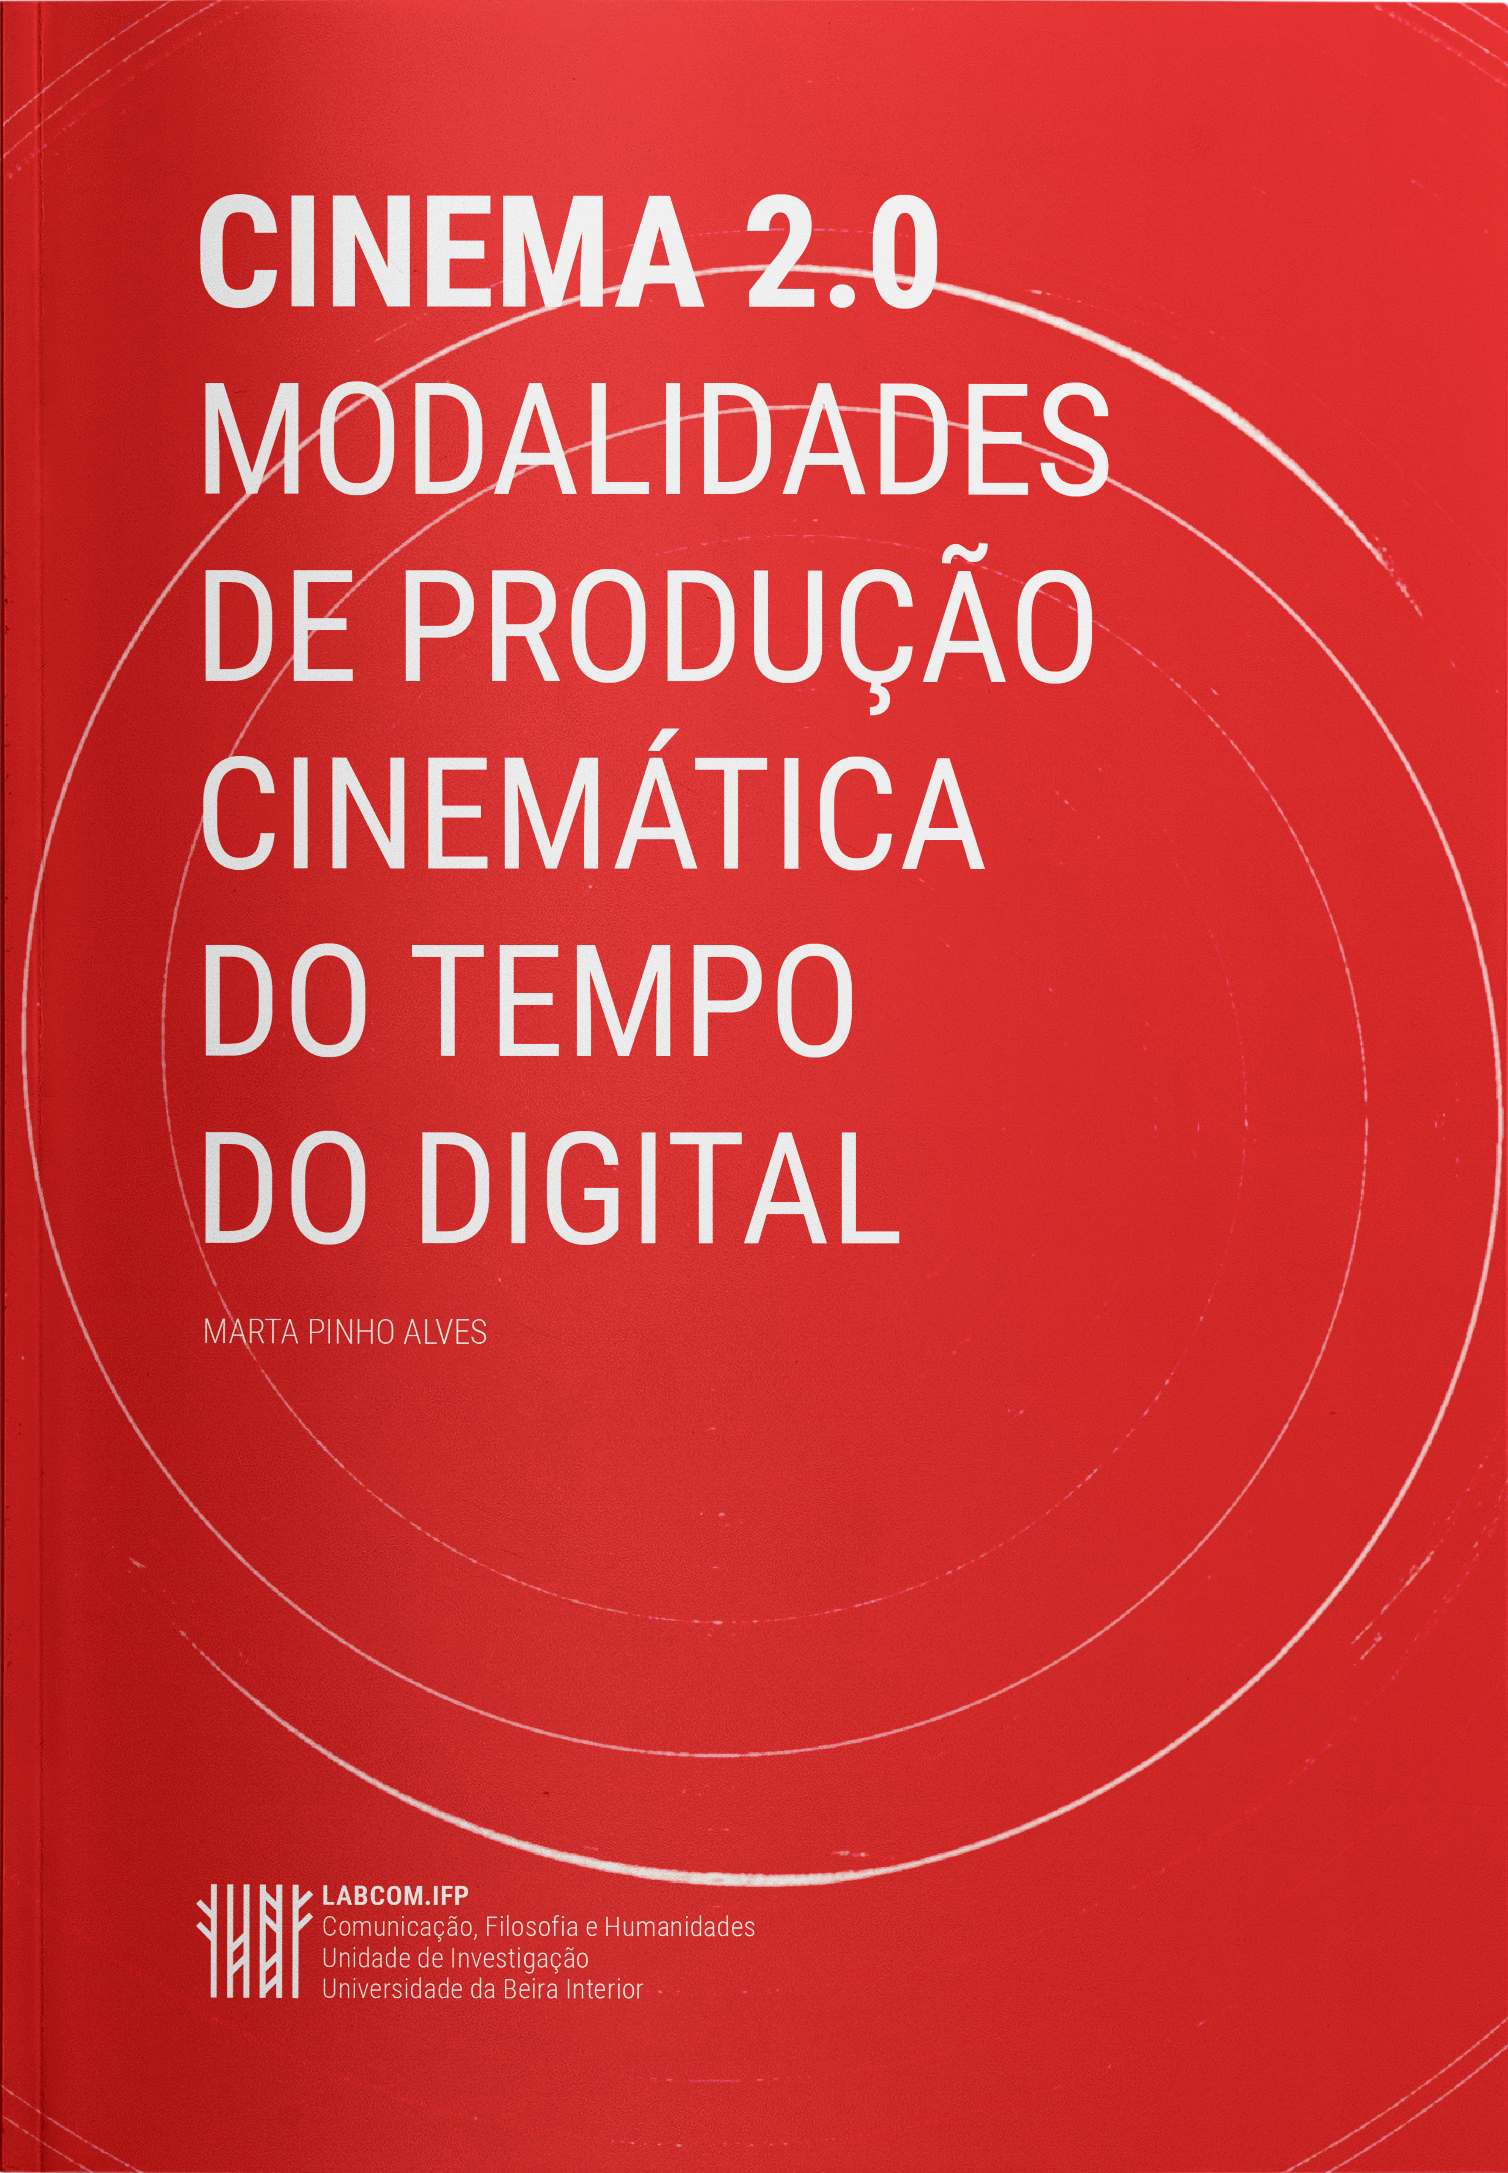 CINEMA 2.0 MODALIDADES DE PRODUÇÃO CINEMÁTICA DO TEMPO DO DIGITAL